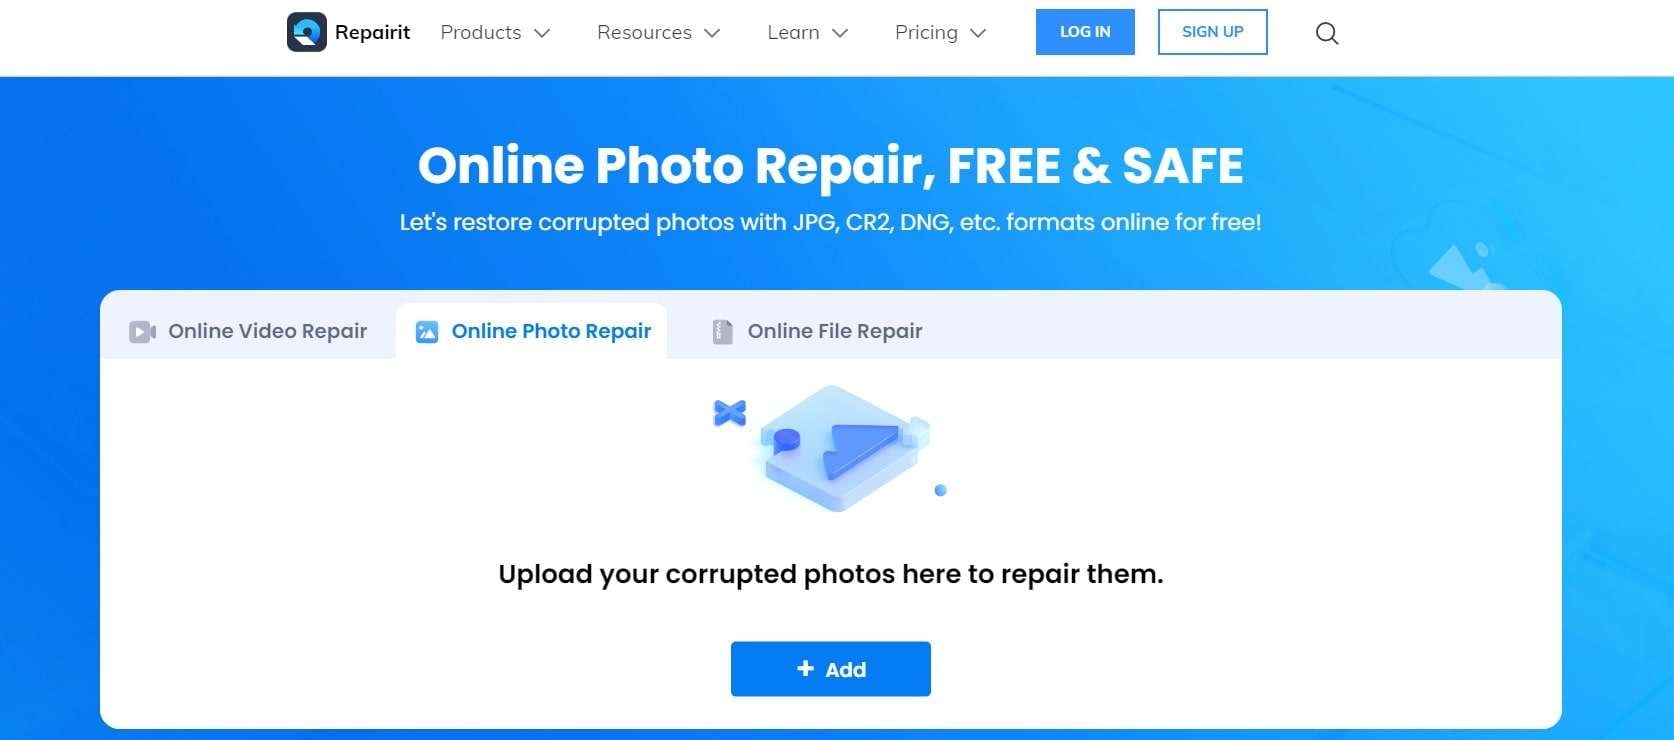 wondershare online photo repair tool 